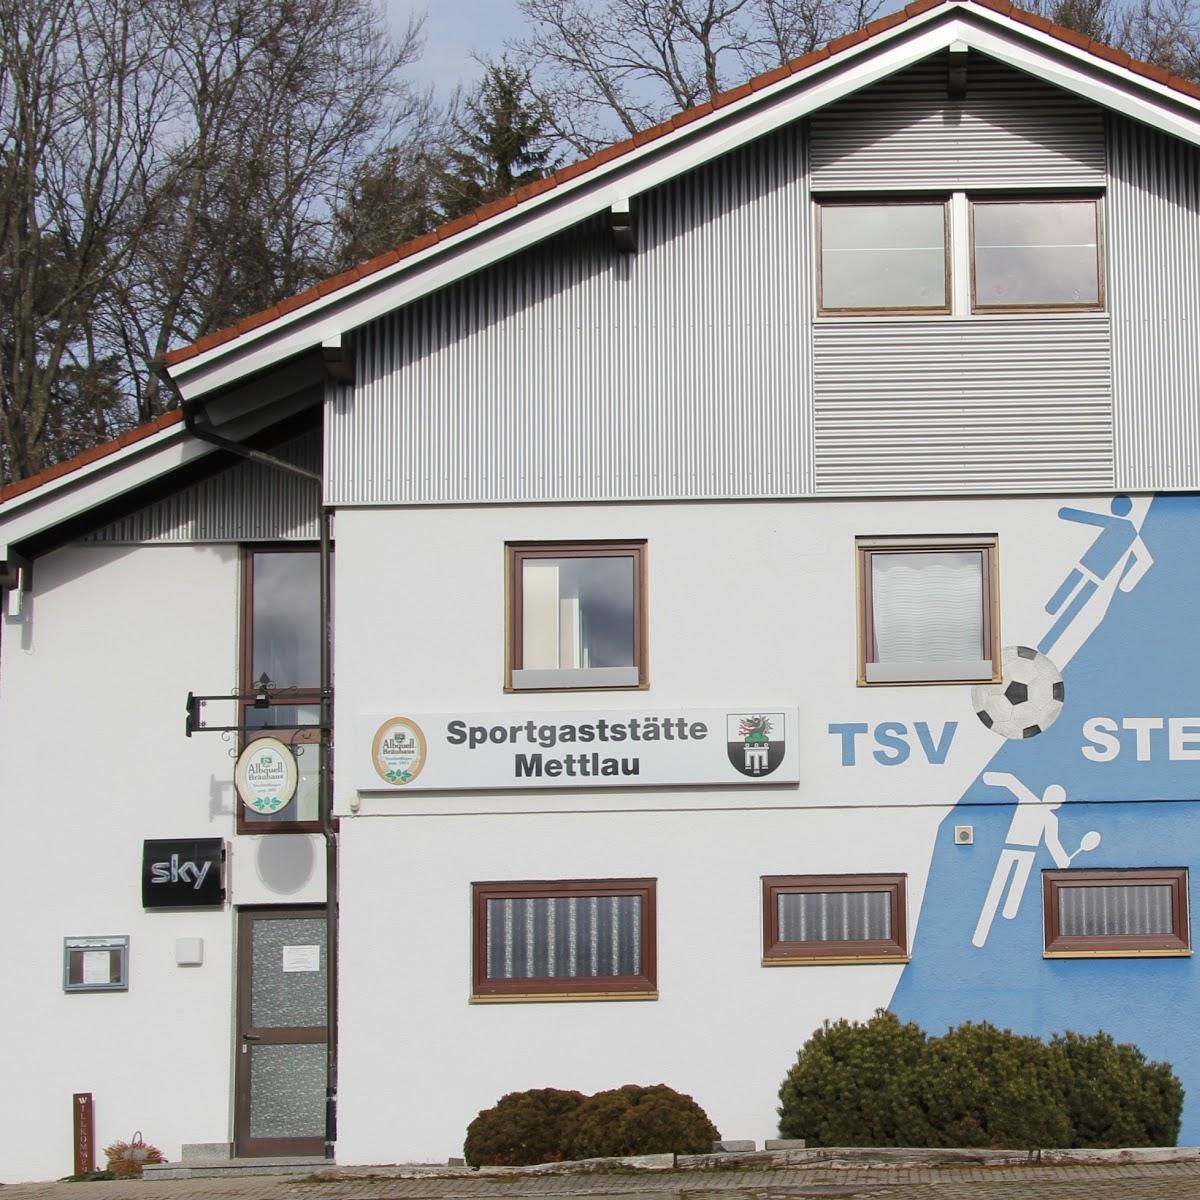 Restaurant "Sportgaststätte Mettlau" in  Trochtelfingen